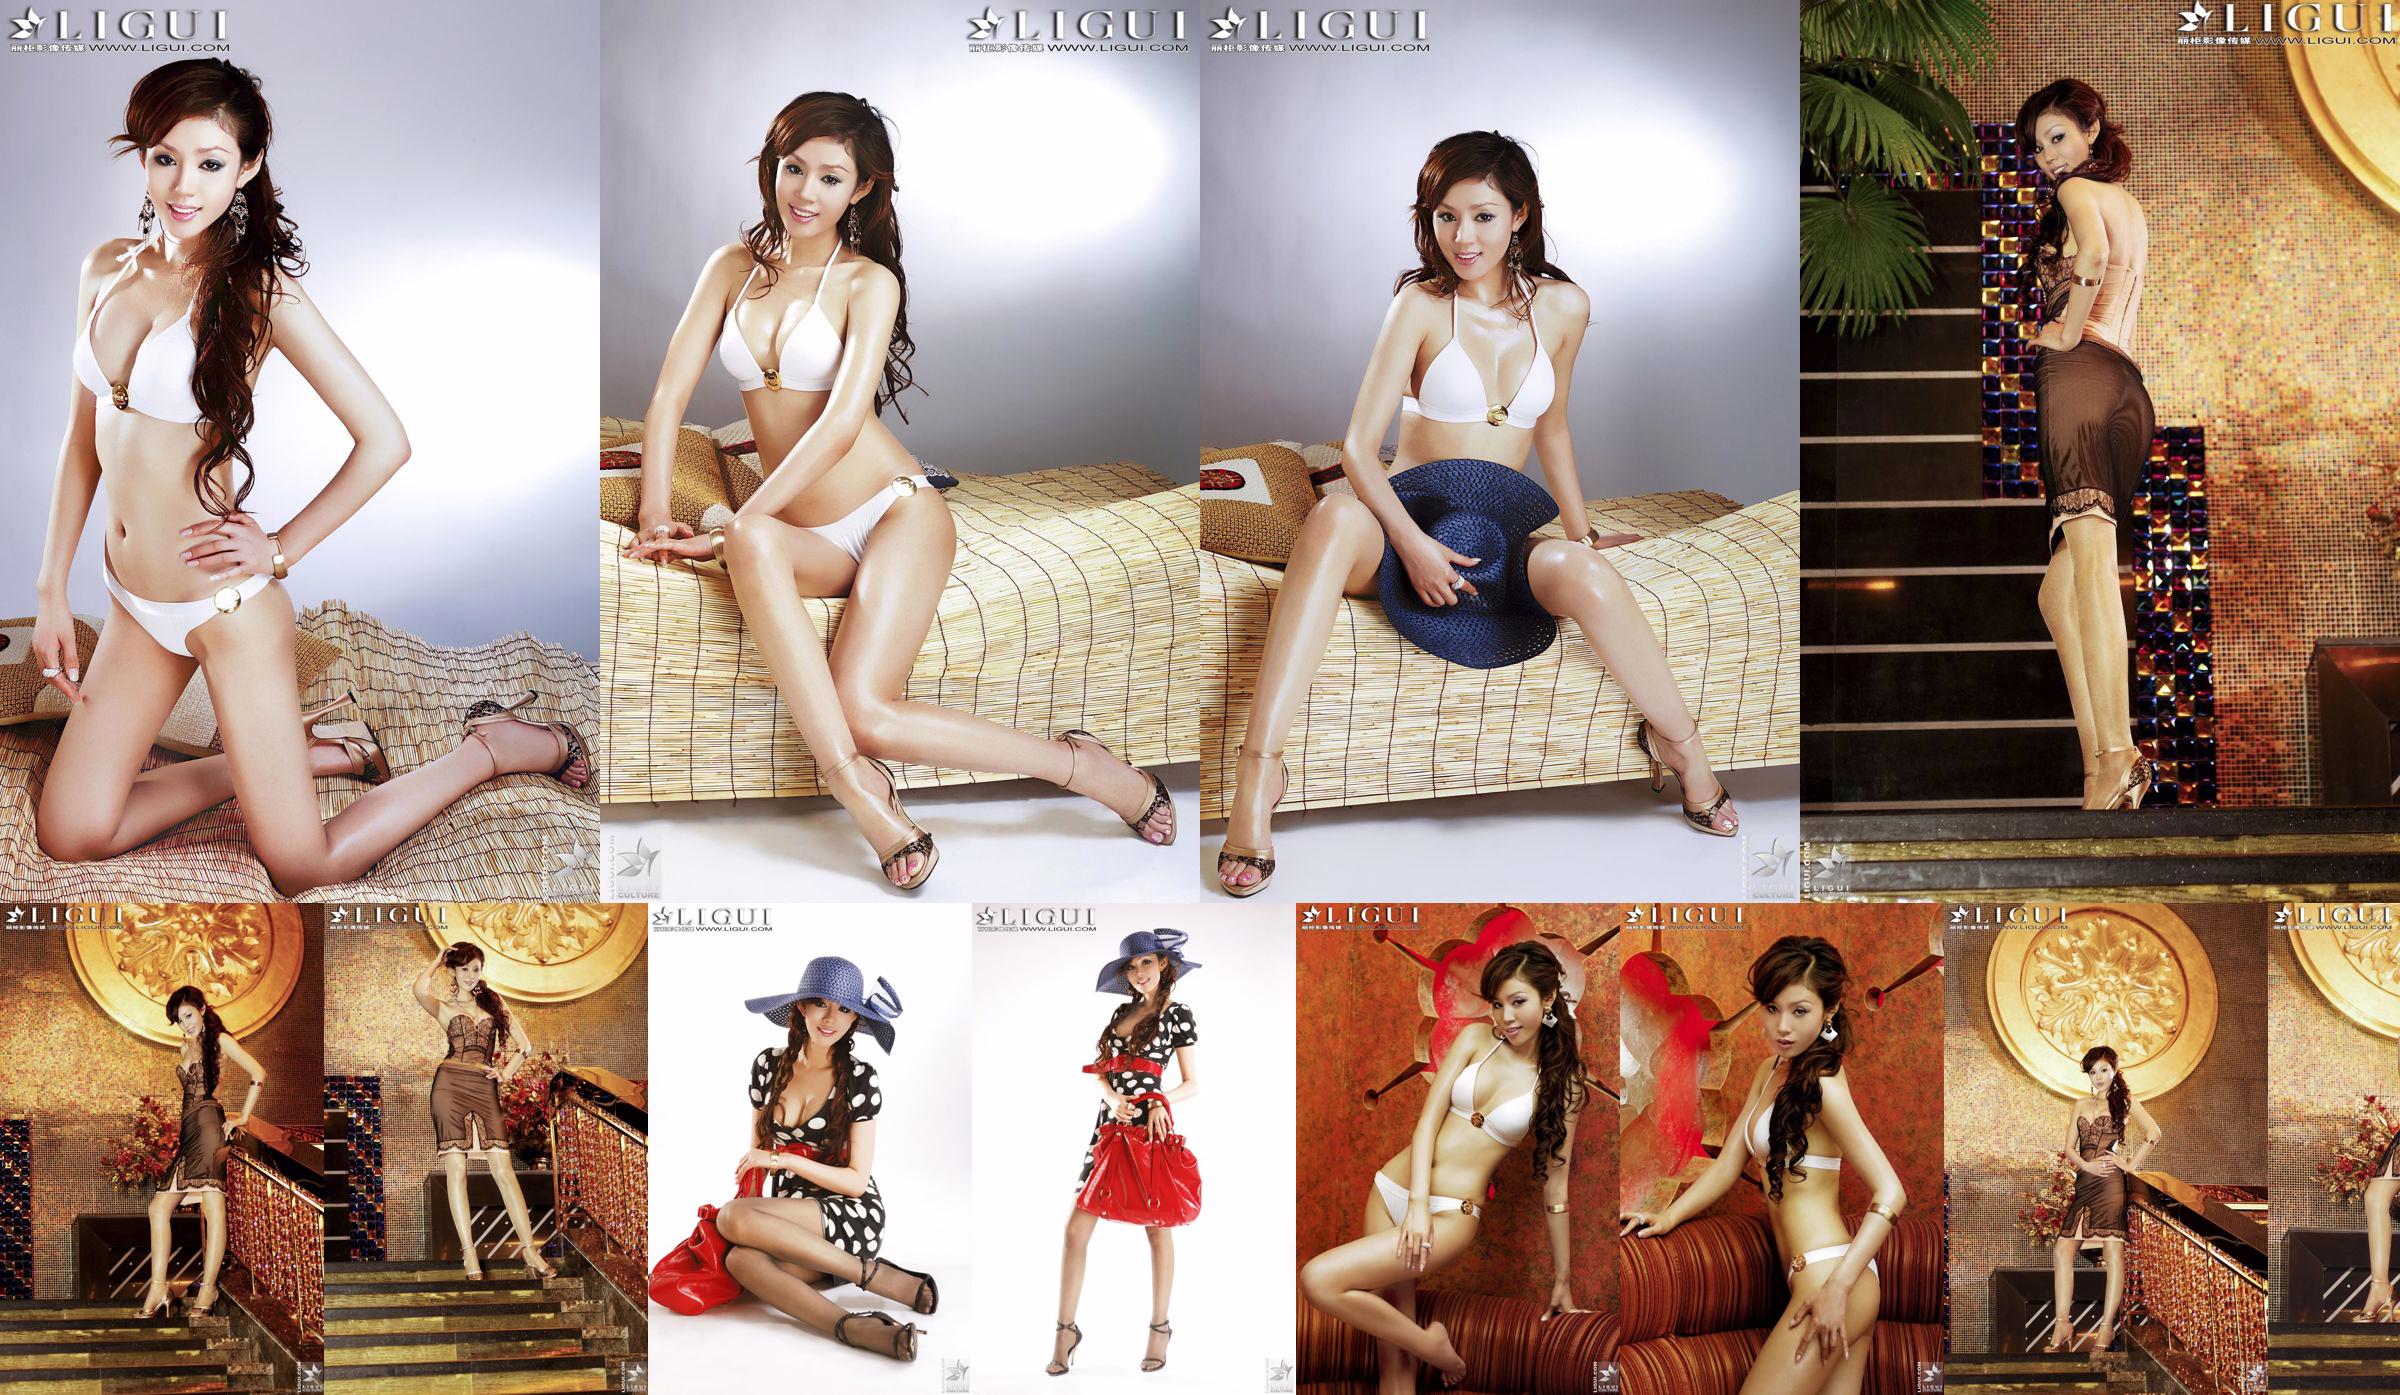 [丽 柜 LiGui] "Bikini + Dress" Model Yao Jinjin Gambar Foto Kaki yang Indah dan Kaki yang Halus No.c69bfe Halaman 3